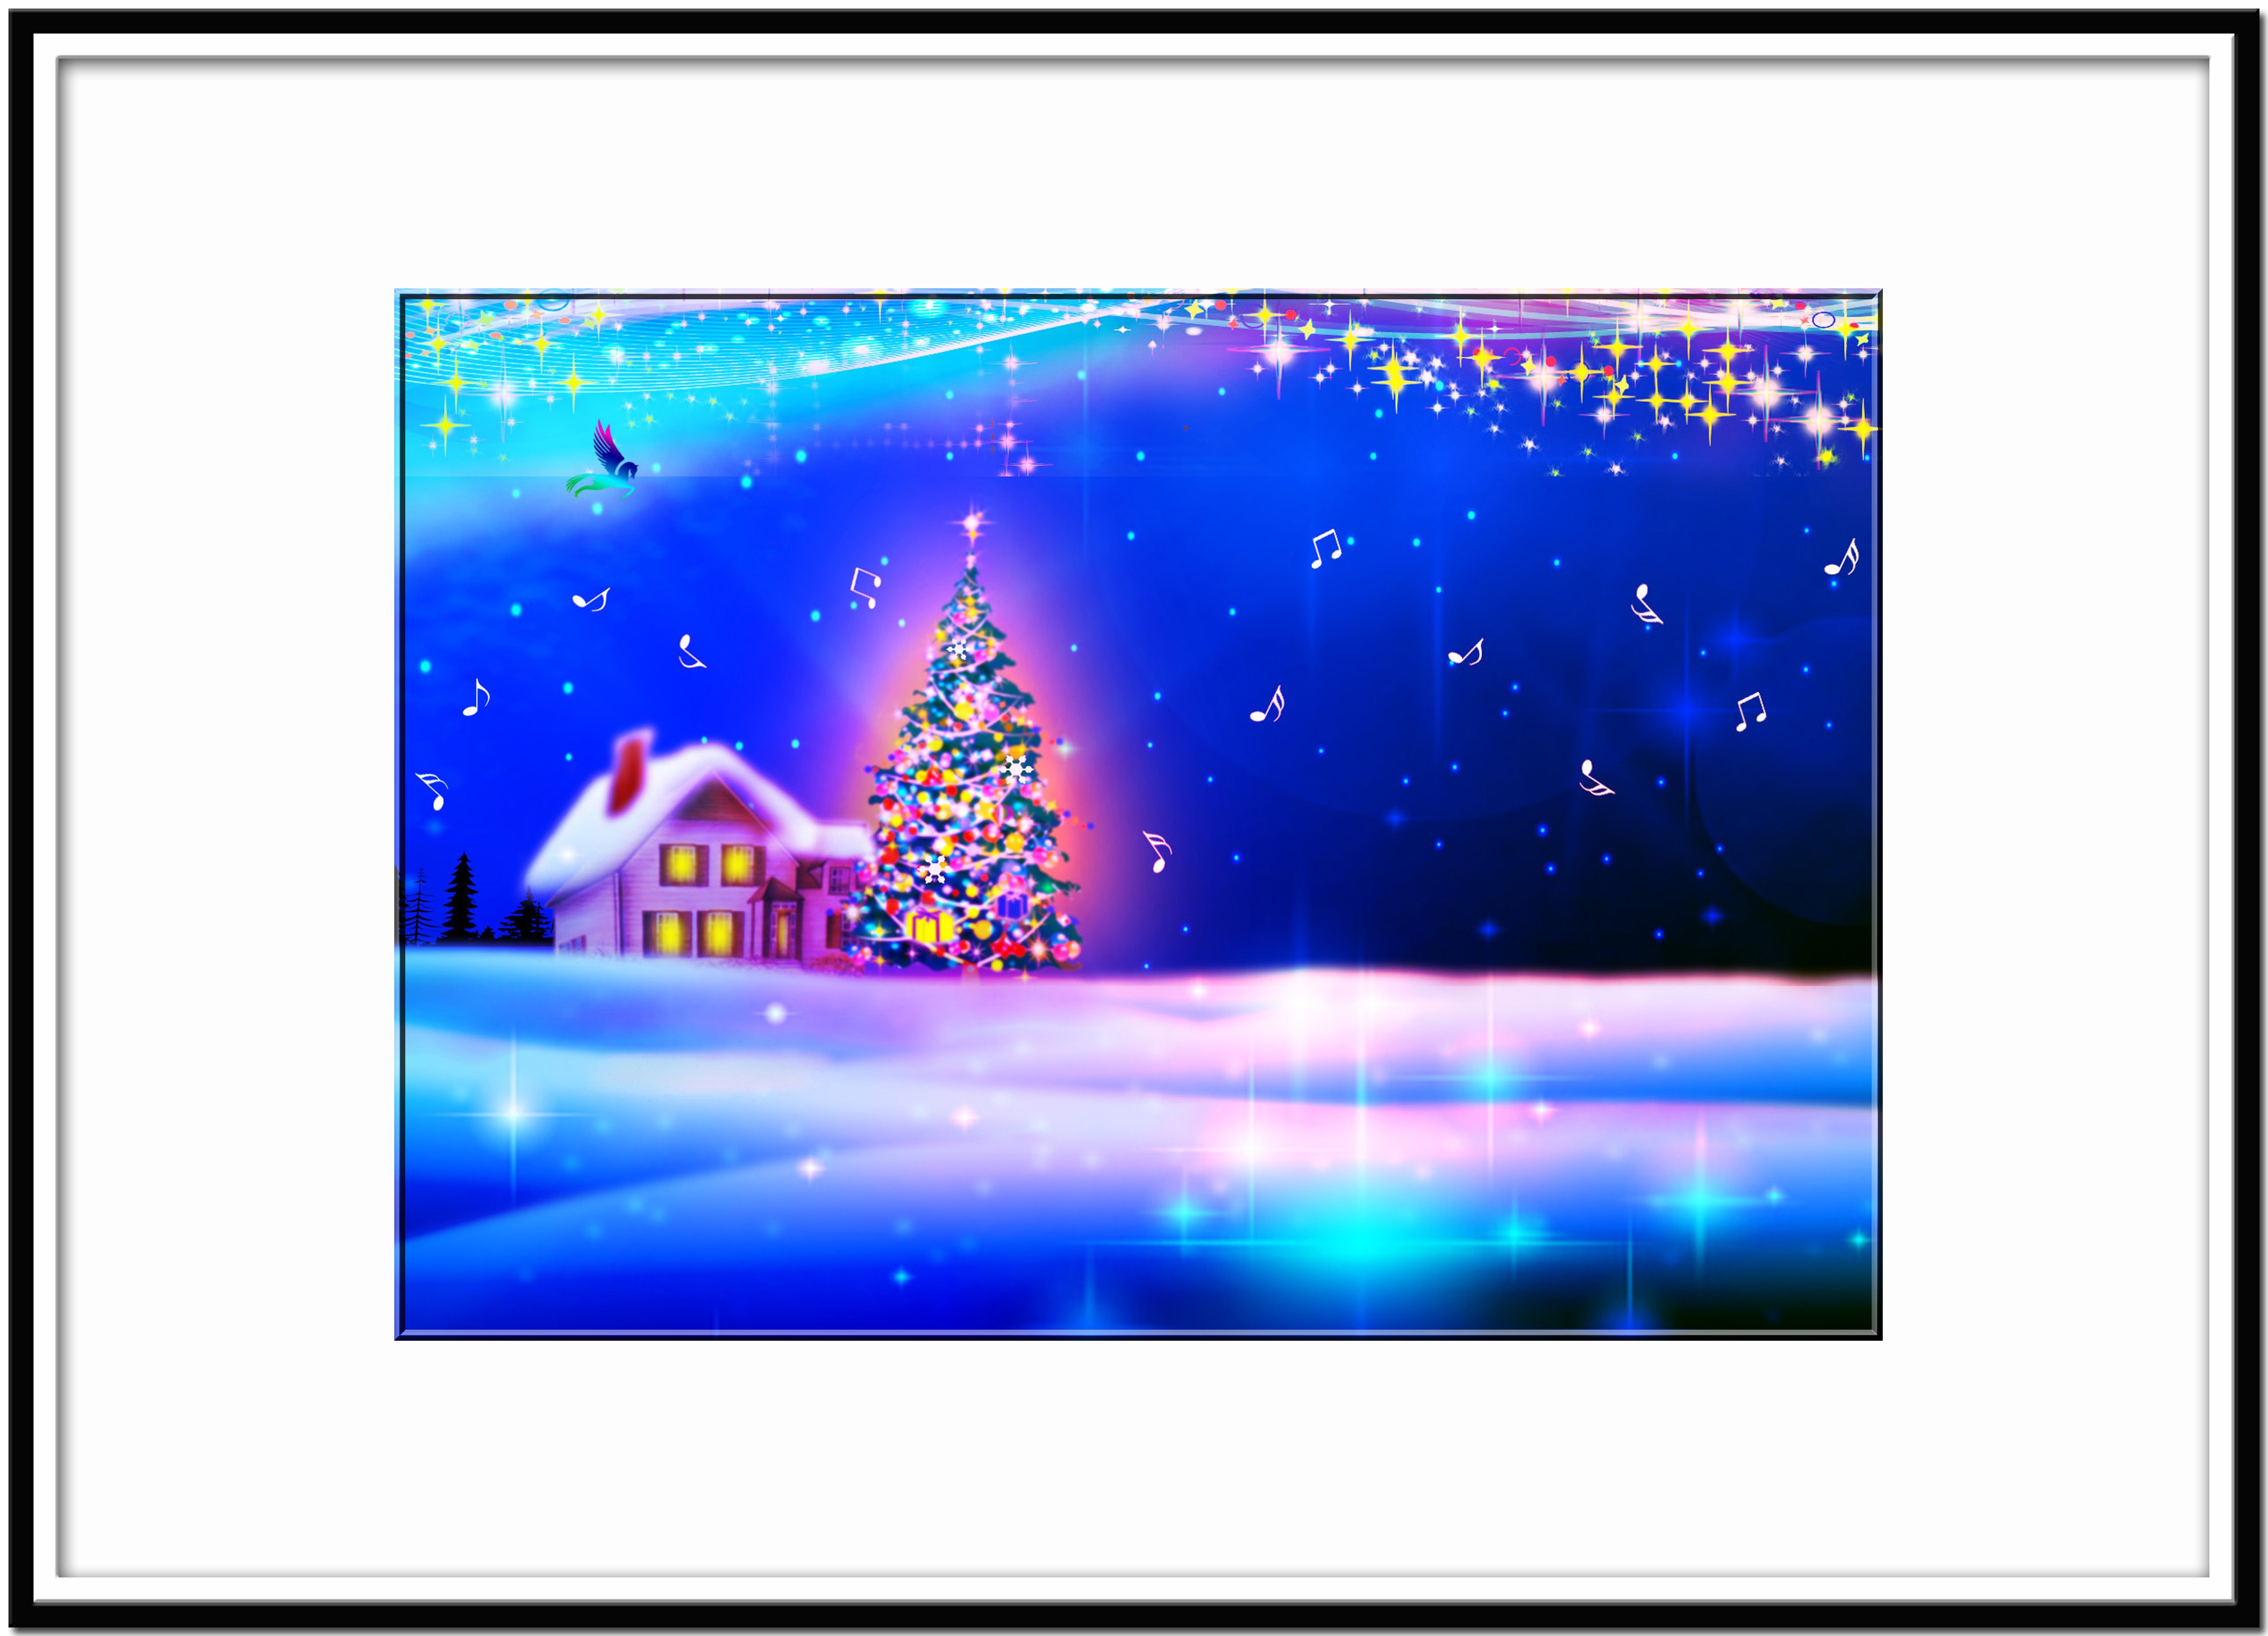 ハロー キラッキラ クリスマス ほっこり癒しのイラストa4サイズポスターno 573 Iichi ハンドメイド クラフト作品 手仕事品の通販